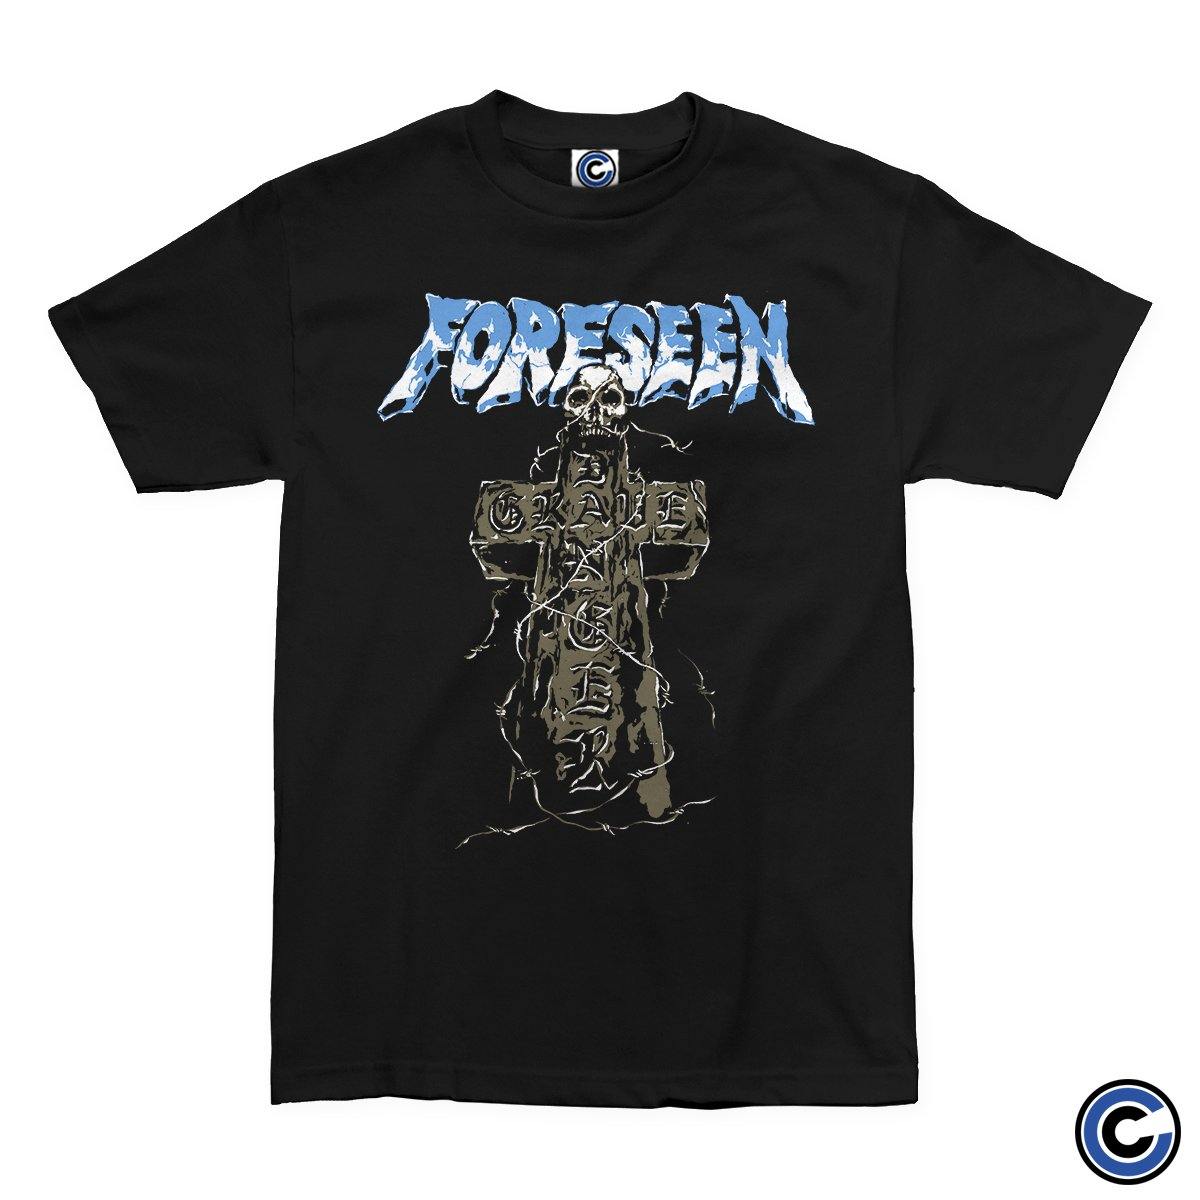 Buy – Foreseen "Grave Danger" Shirt – Band & Music Merch – Cold Cuts Merch